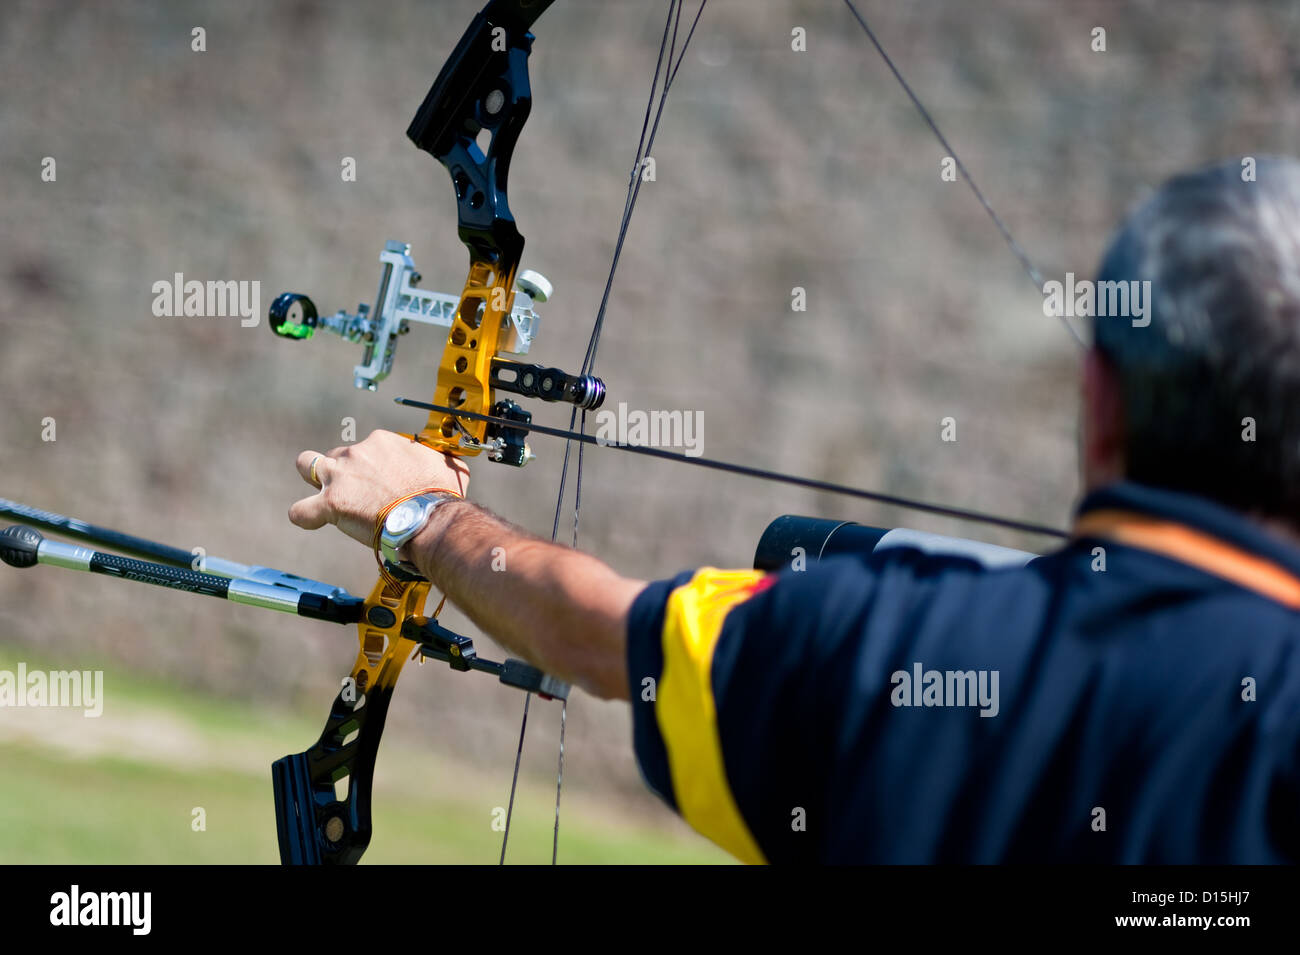 Barcellona, Spagna: Archer mirando a un bersaglio nel tiro con l'arco training camp di Montjuic. Foto Stock